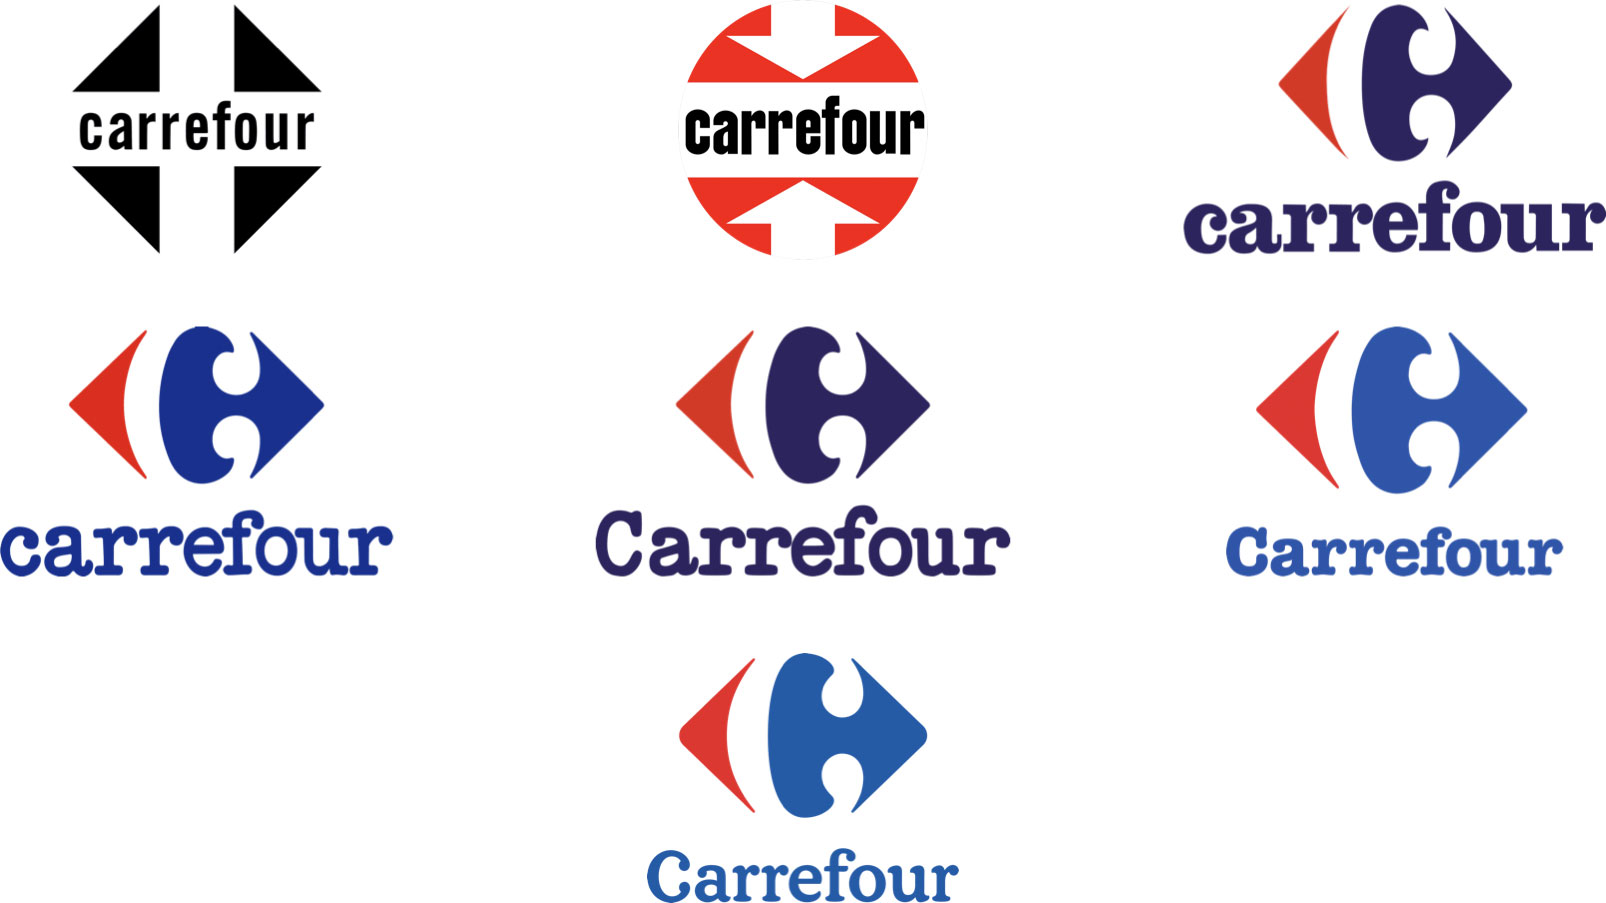 Histoire du logo Carrefour